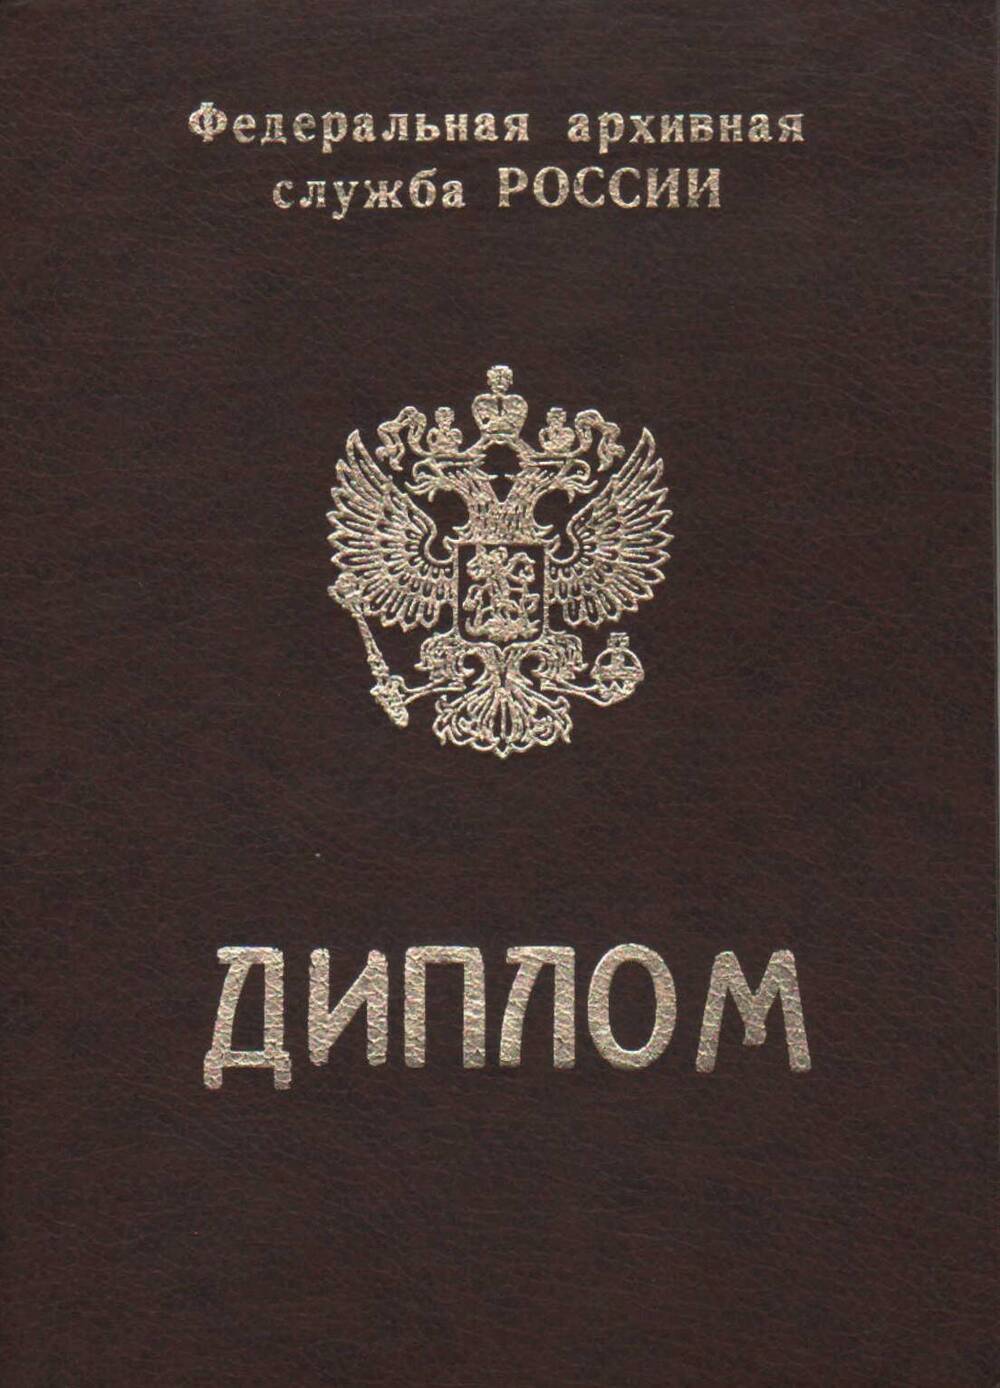 Диплом Жильцова В.И. 1997-1998 гг.